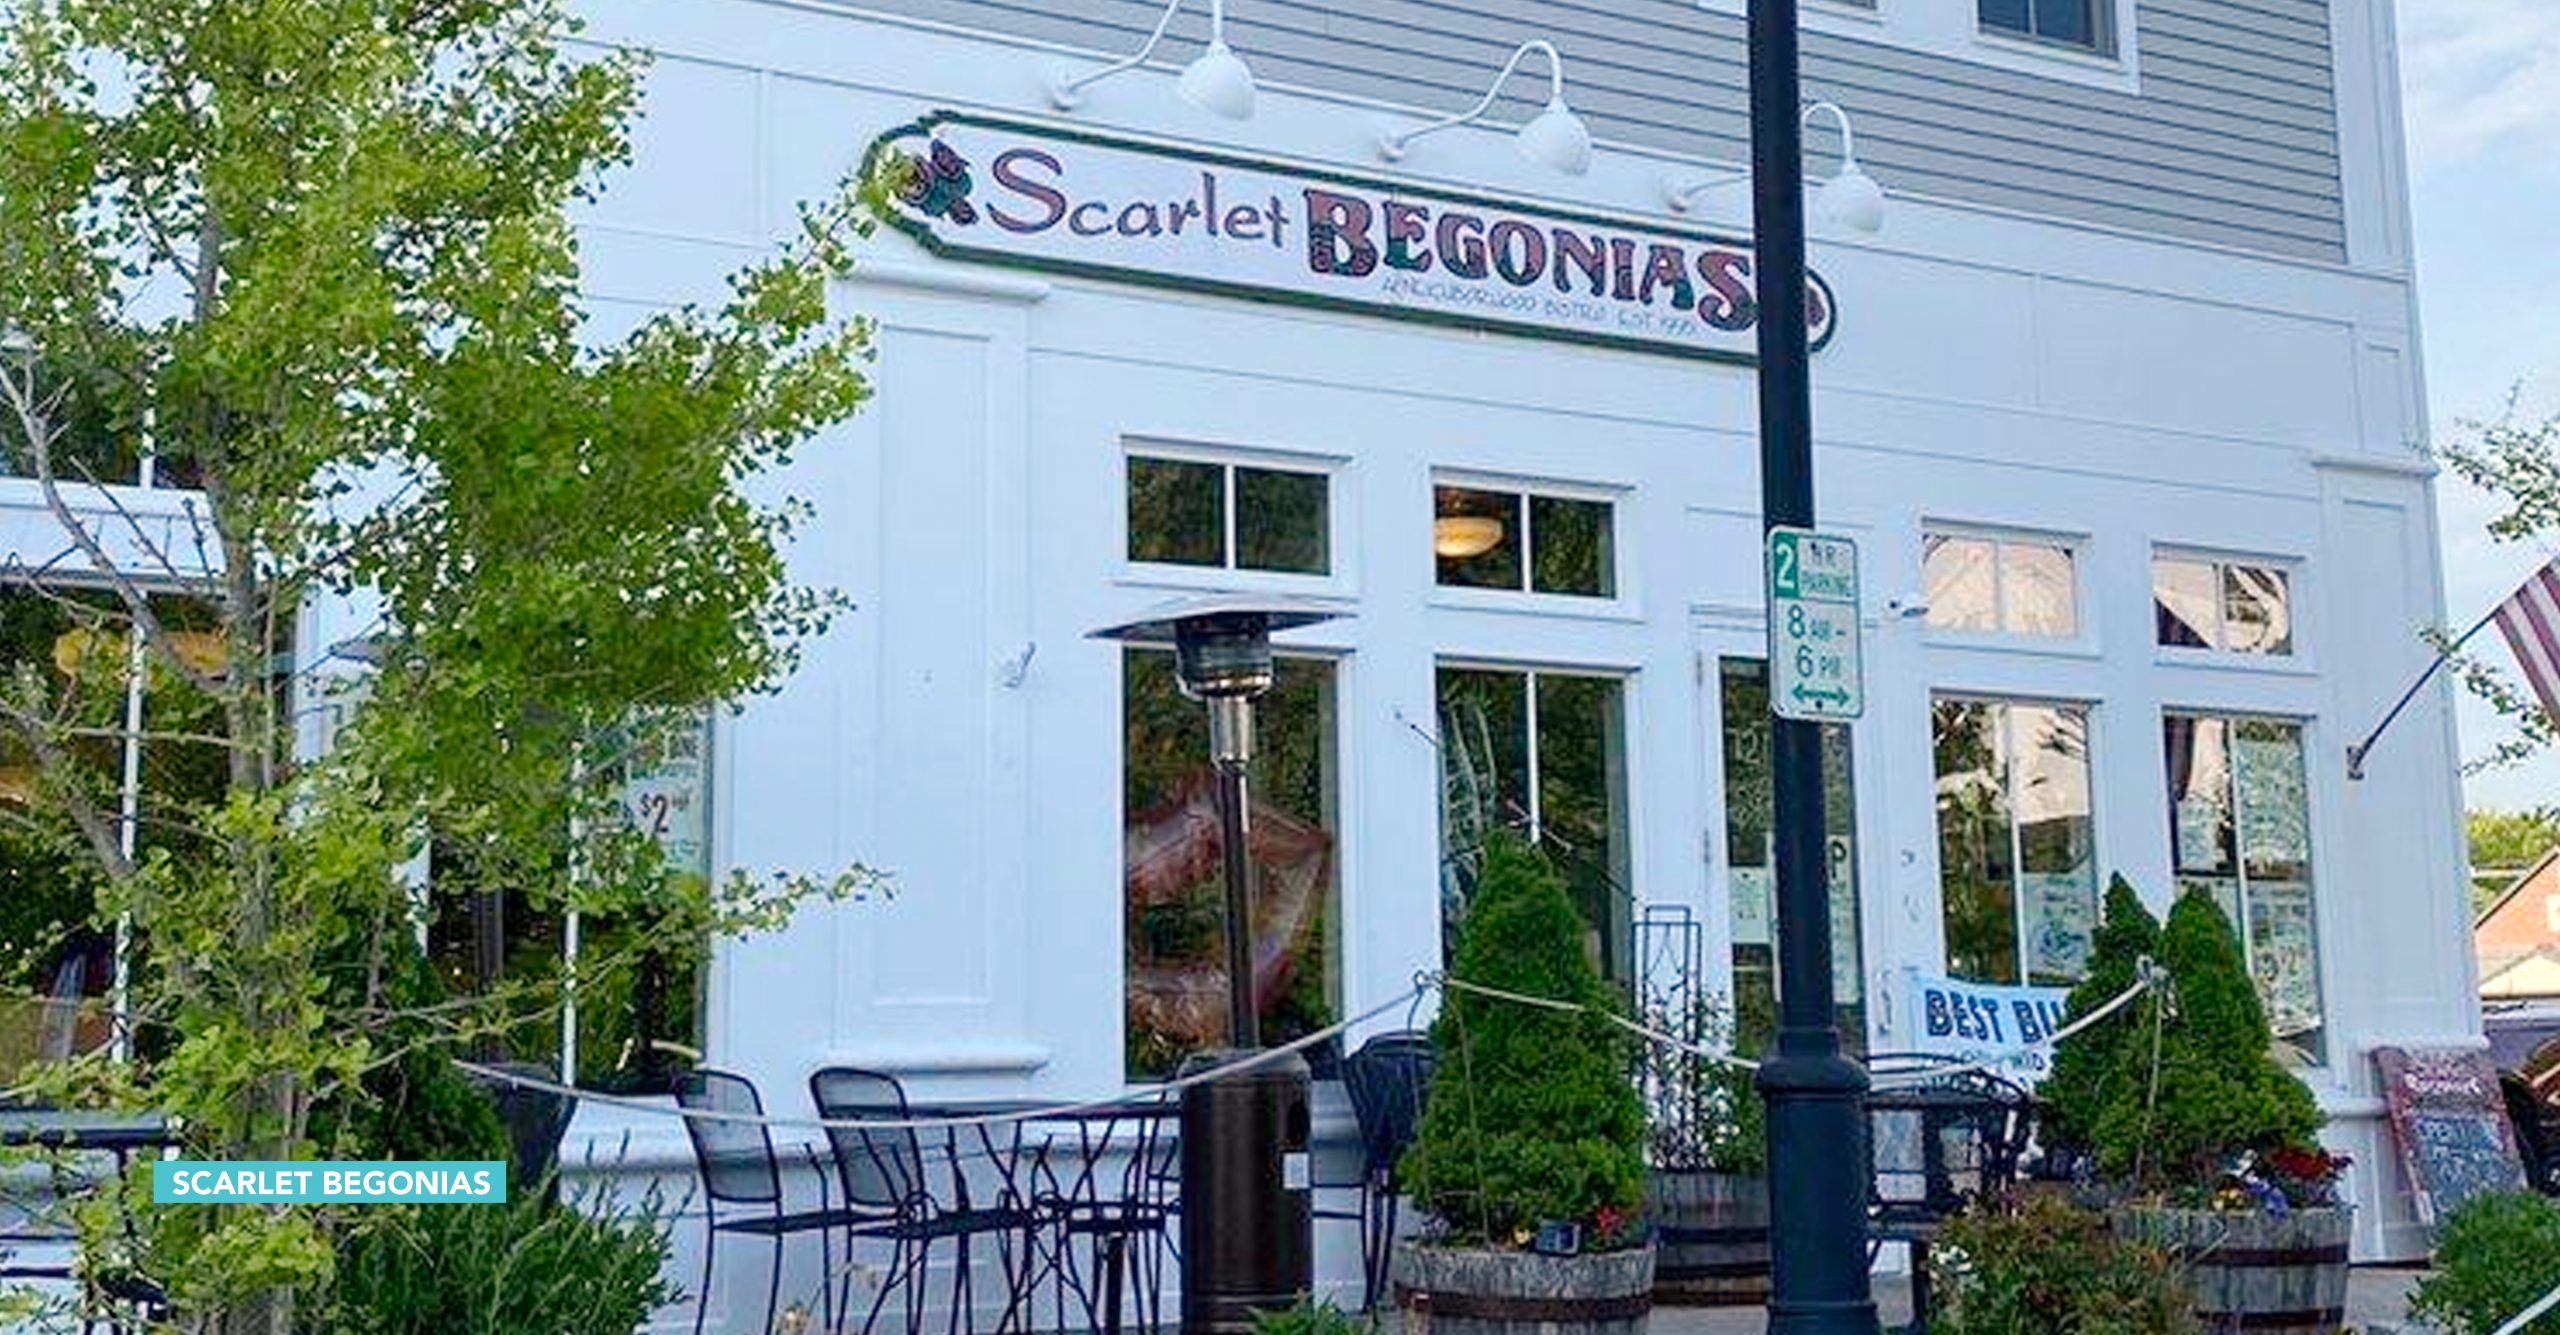 Scarlet Begonias, Brunswick VIC